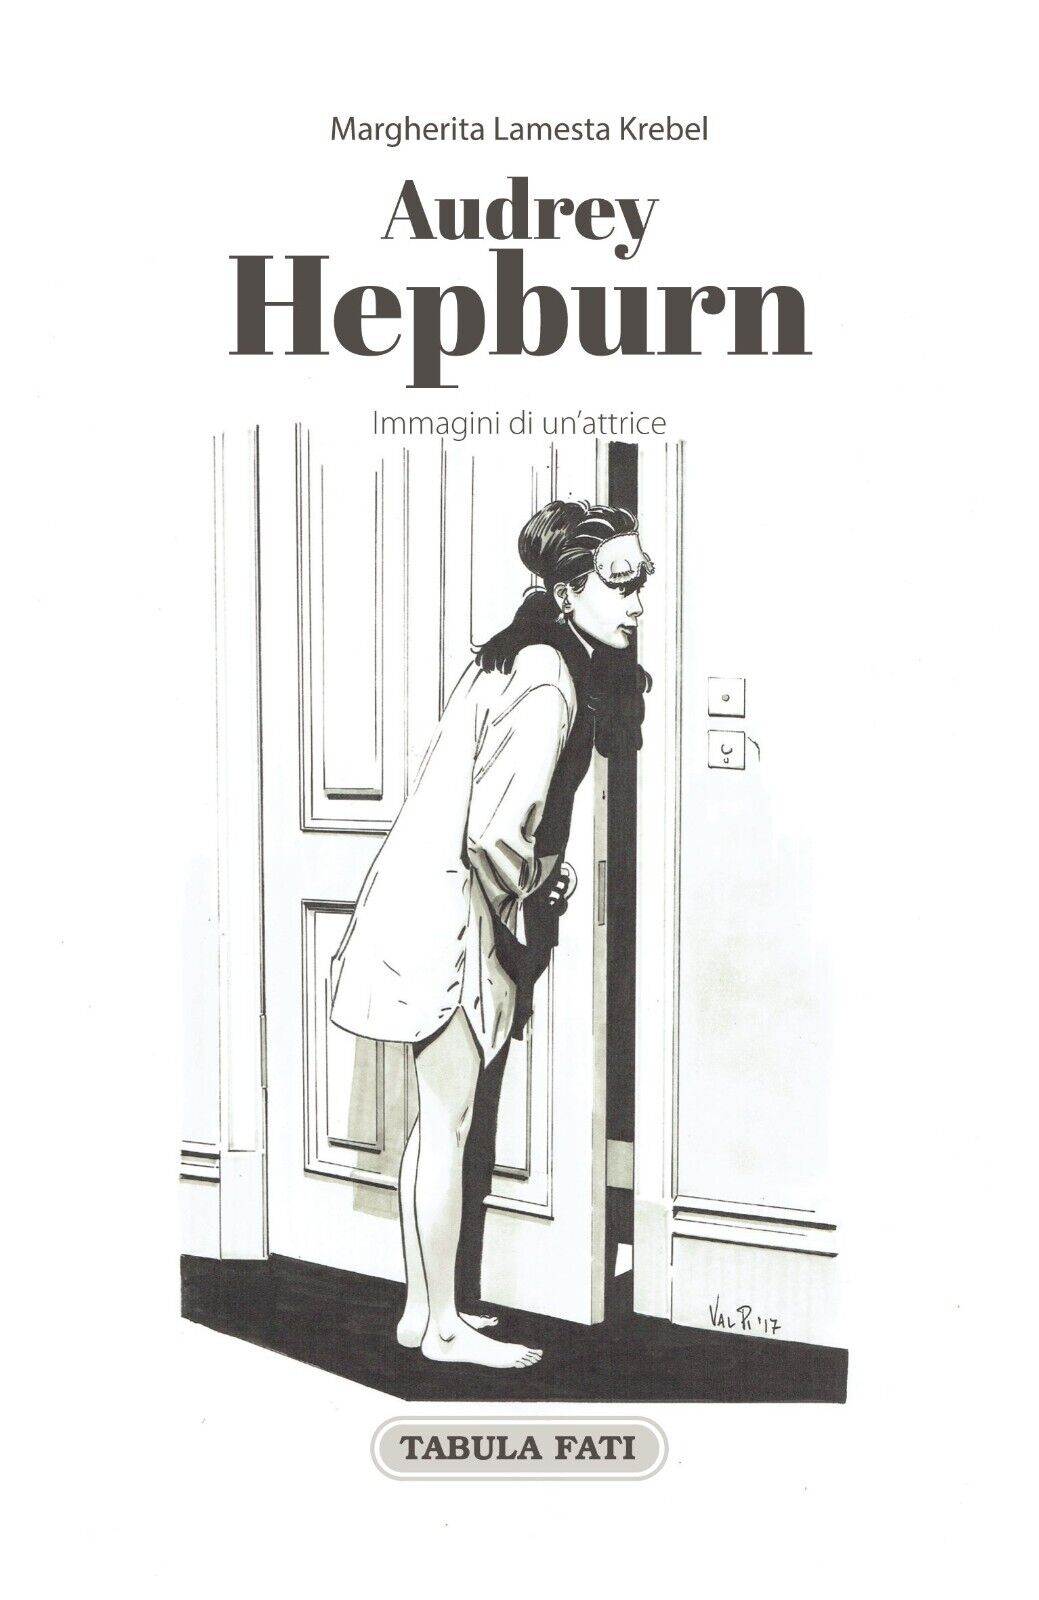 Audrey Hepburn. Immagini di un?attrice di Margherita Lamesta Krebel, 2017, Ta libro usato